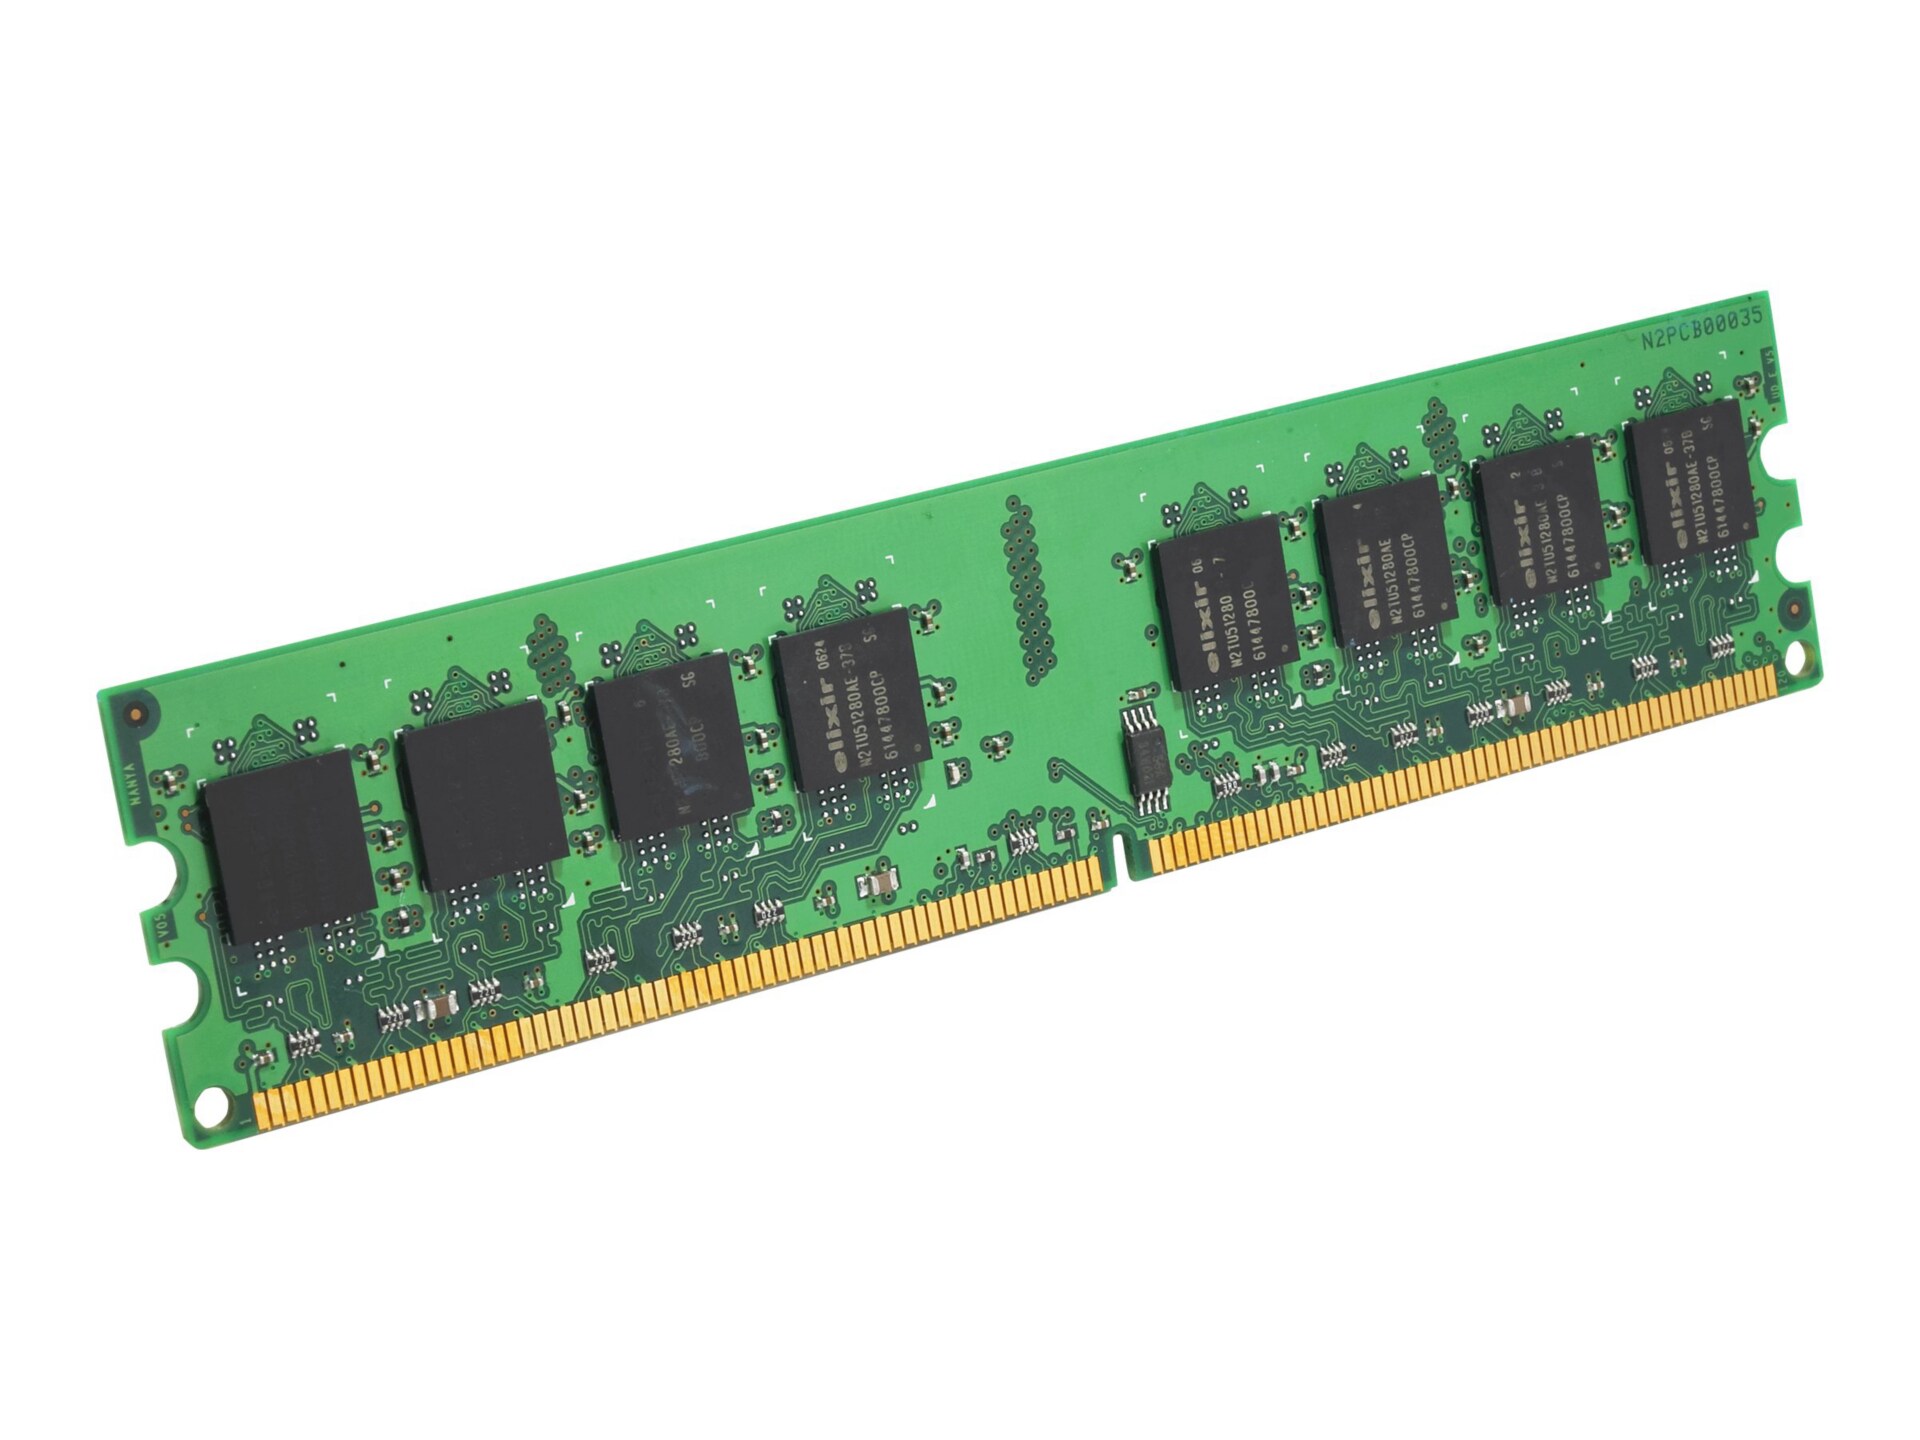 EDGE - DDR2 - 1 GB - DIMM 240-pin - unbuffered